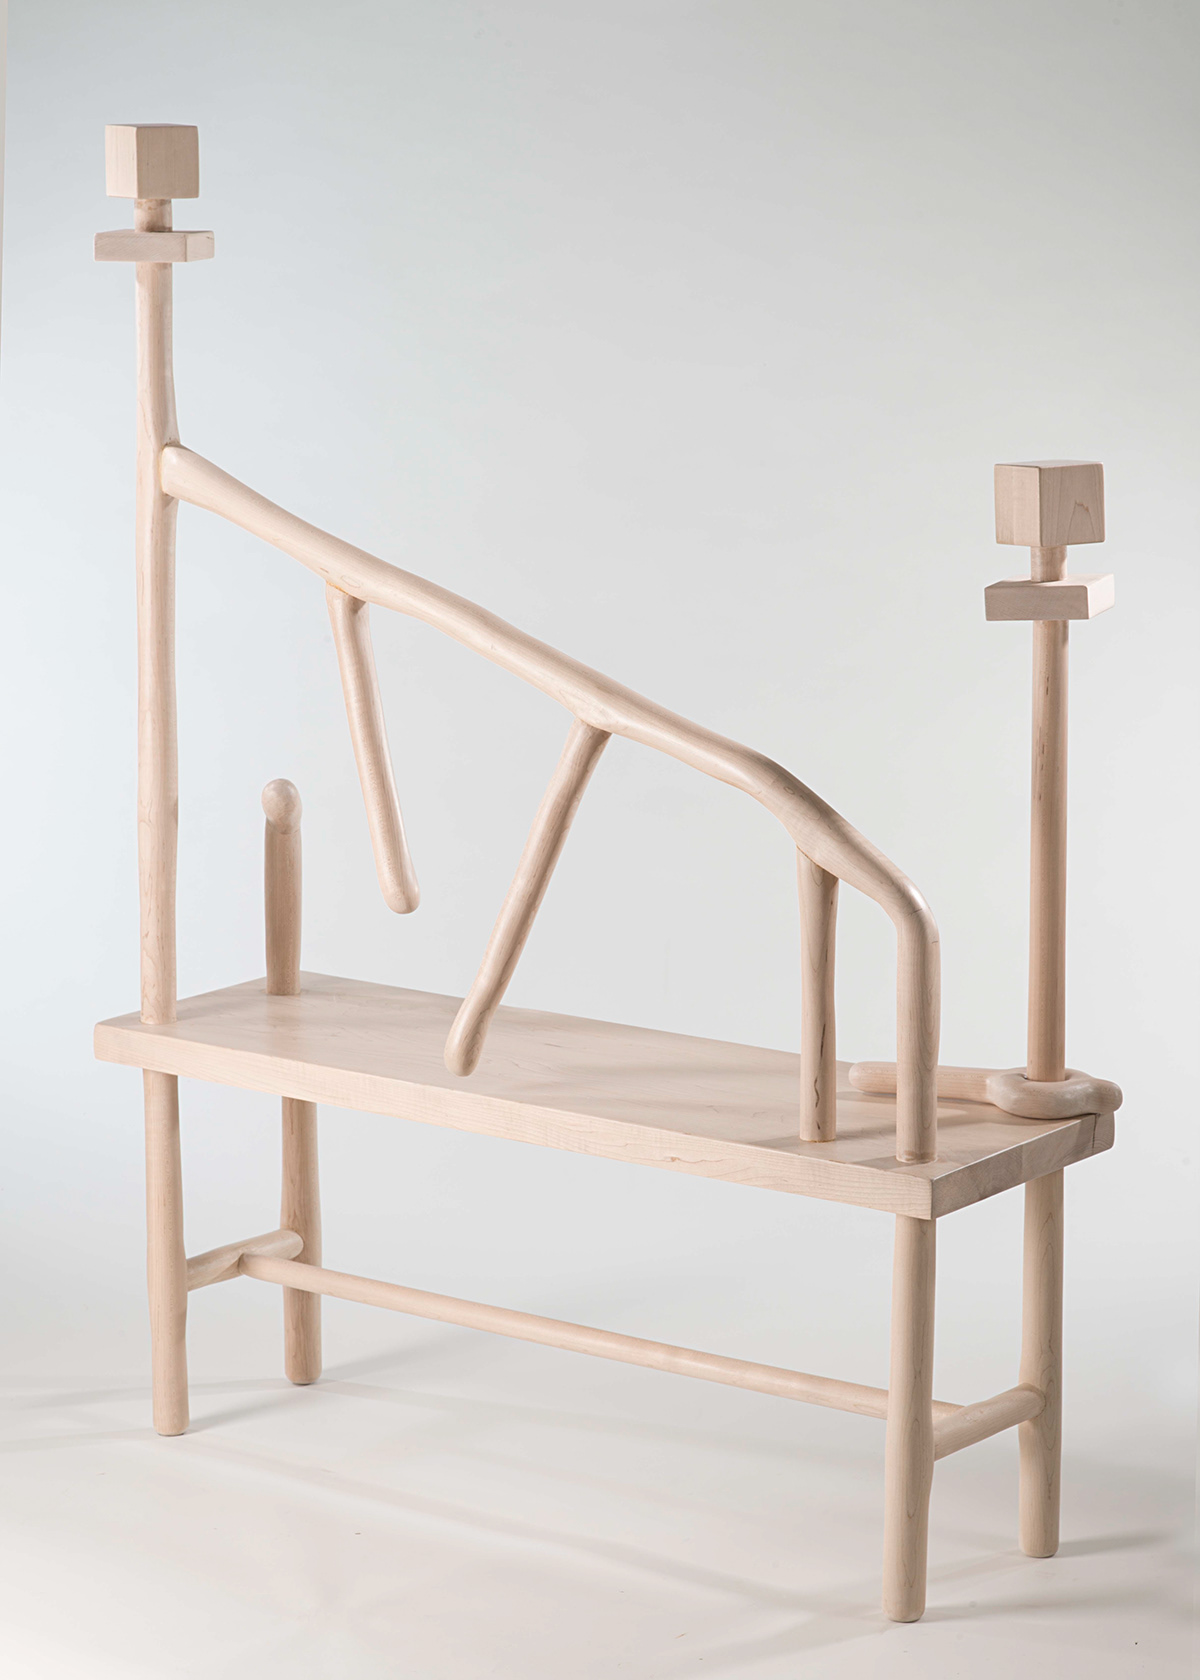 Adobe Portfolio furniture design  bench woodworking risd